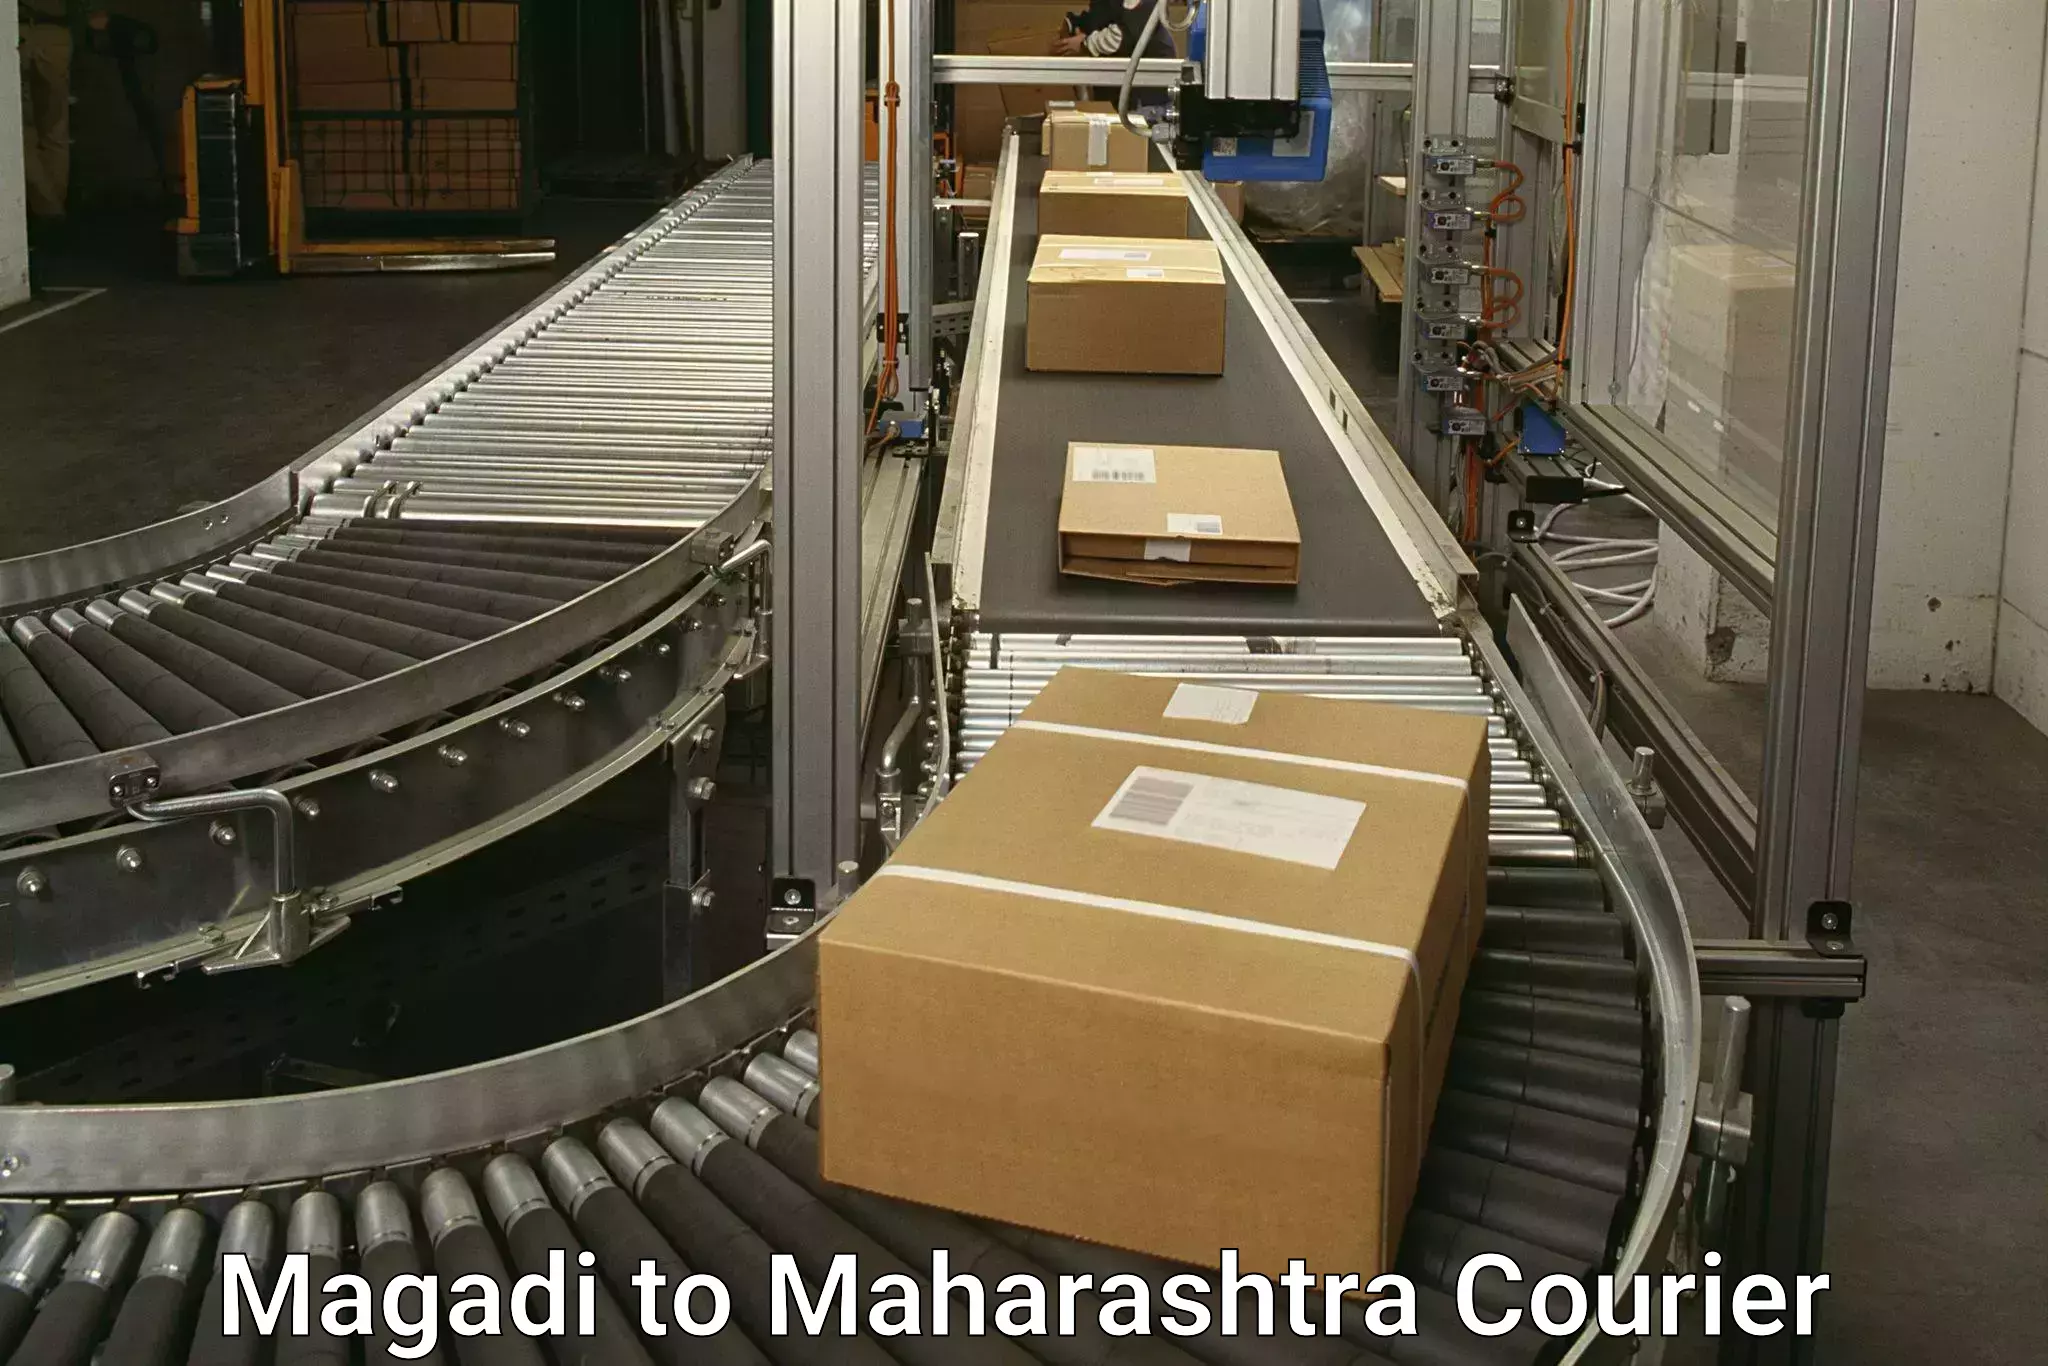 Courier app Magadi to Maharashtra